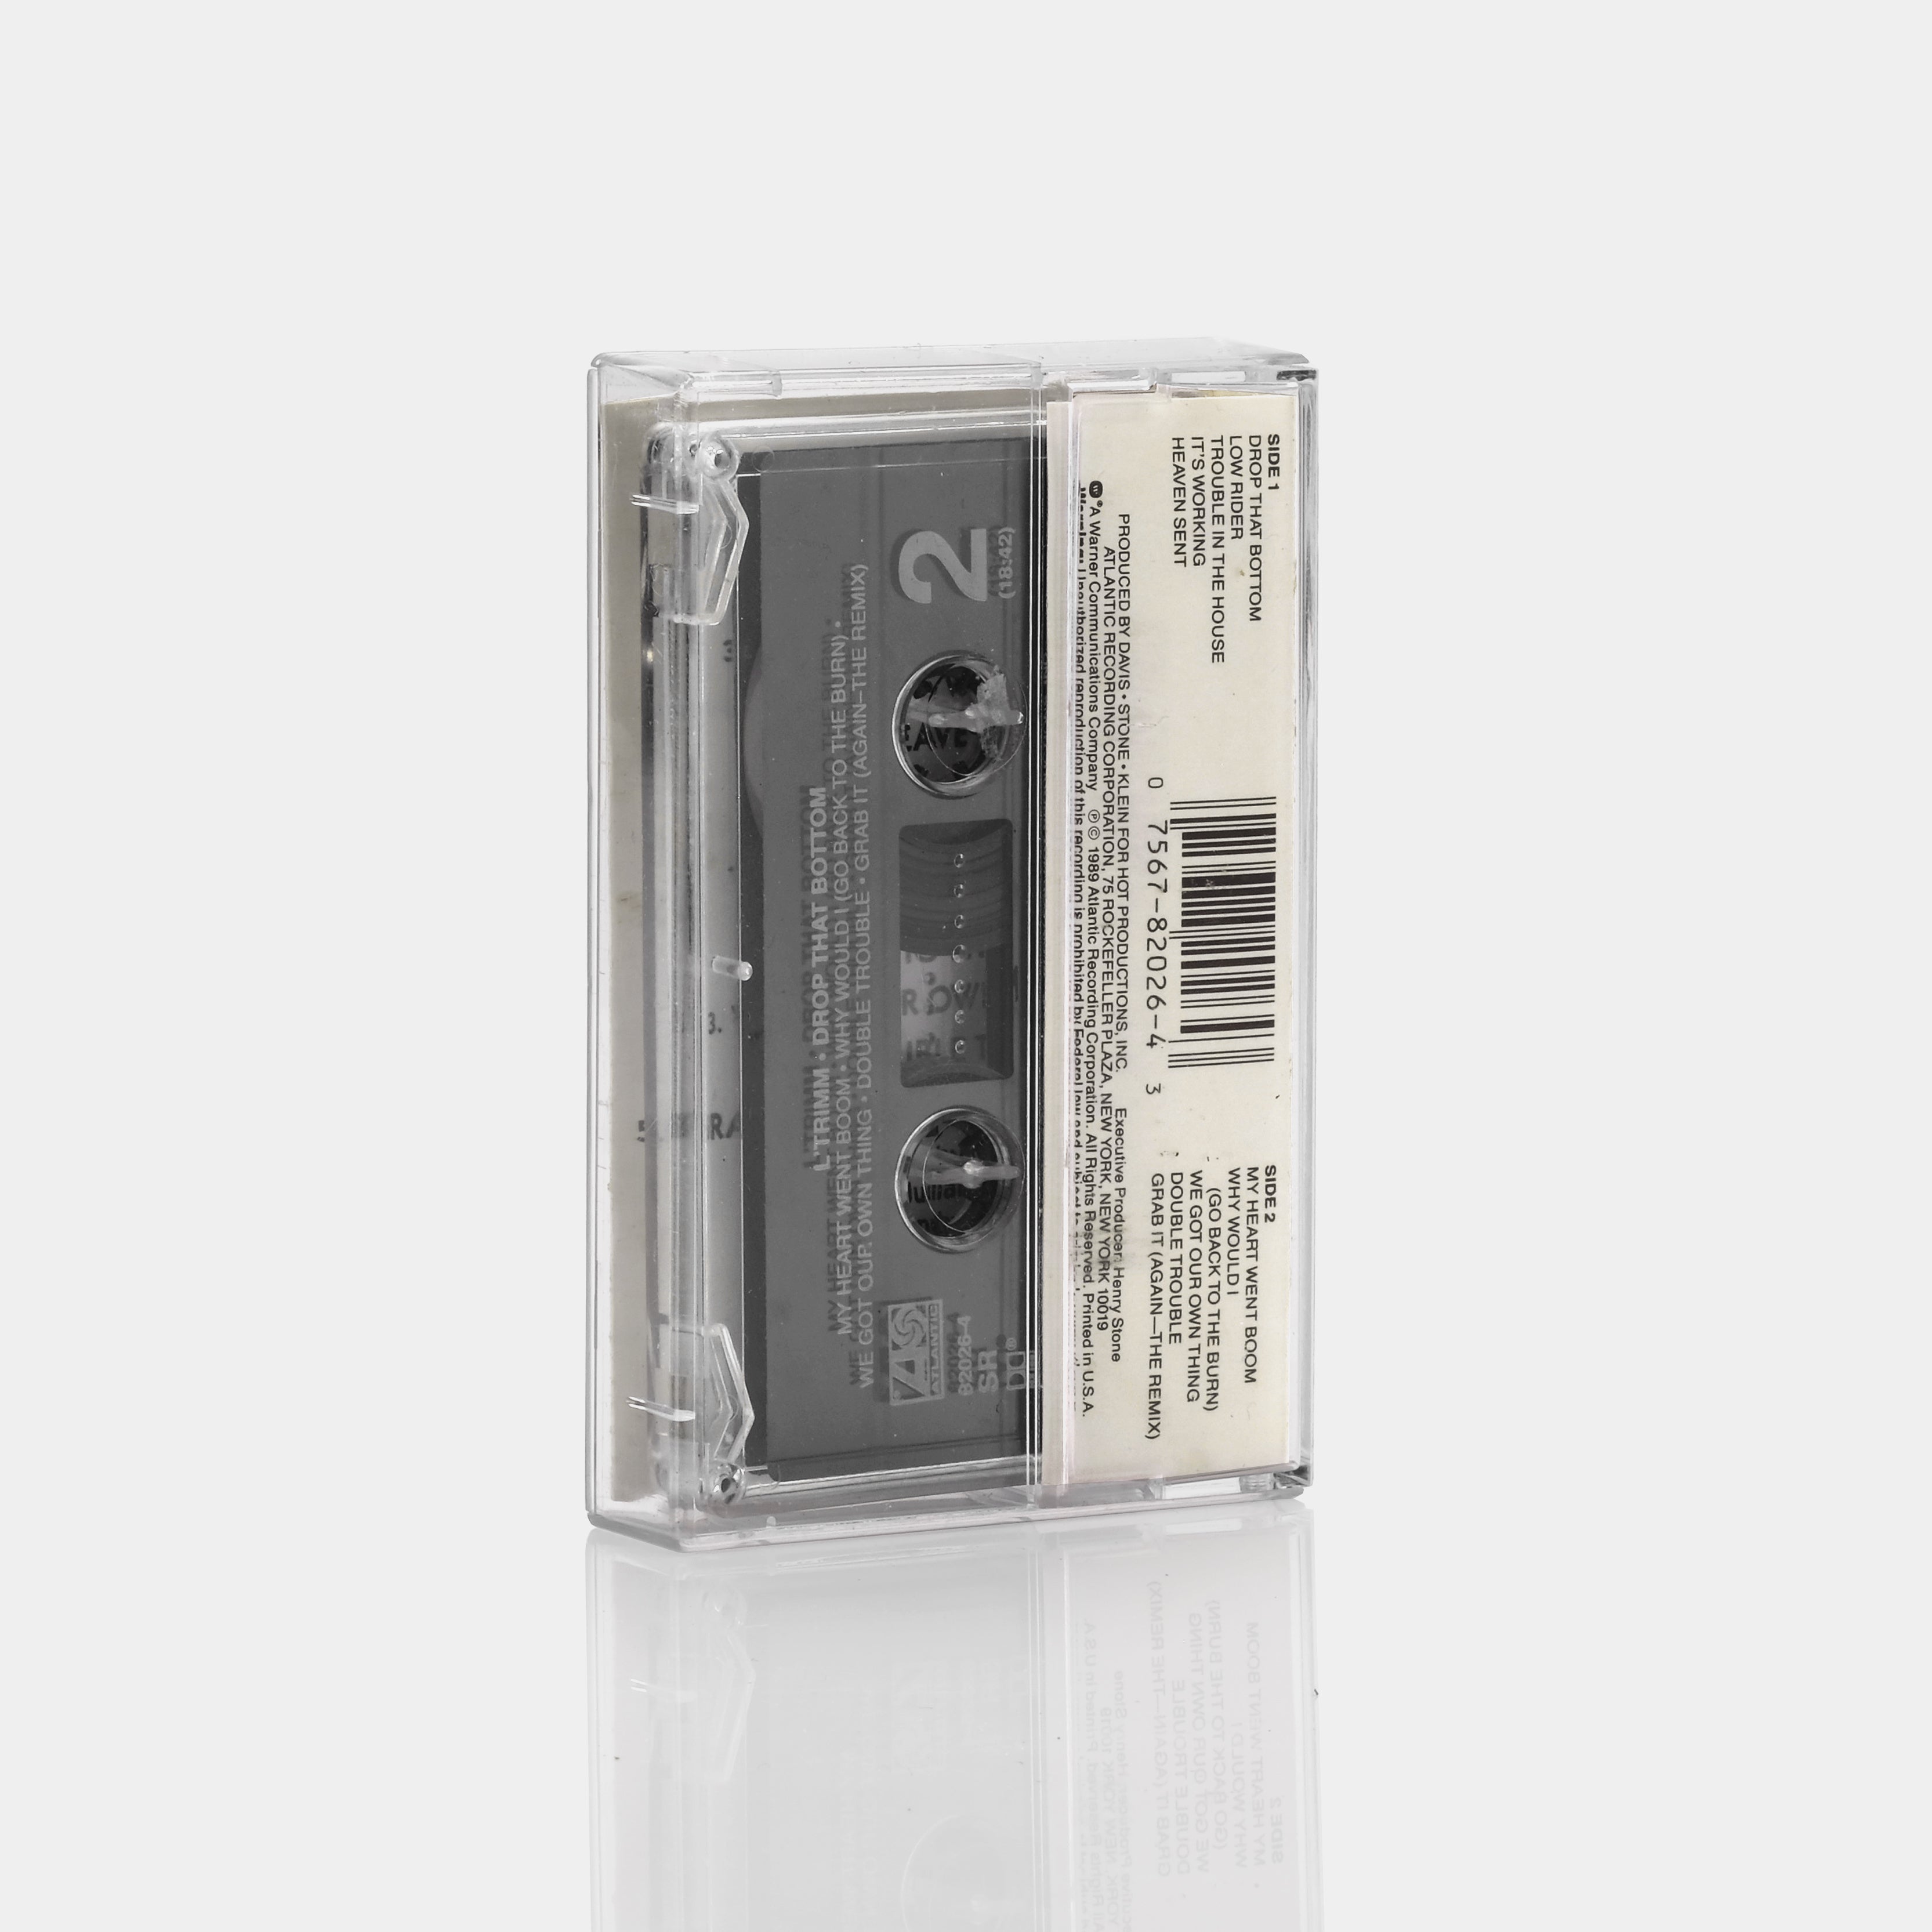 L'Trimm - Drop That Bottom Cassette Tape